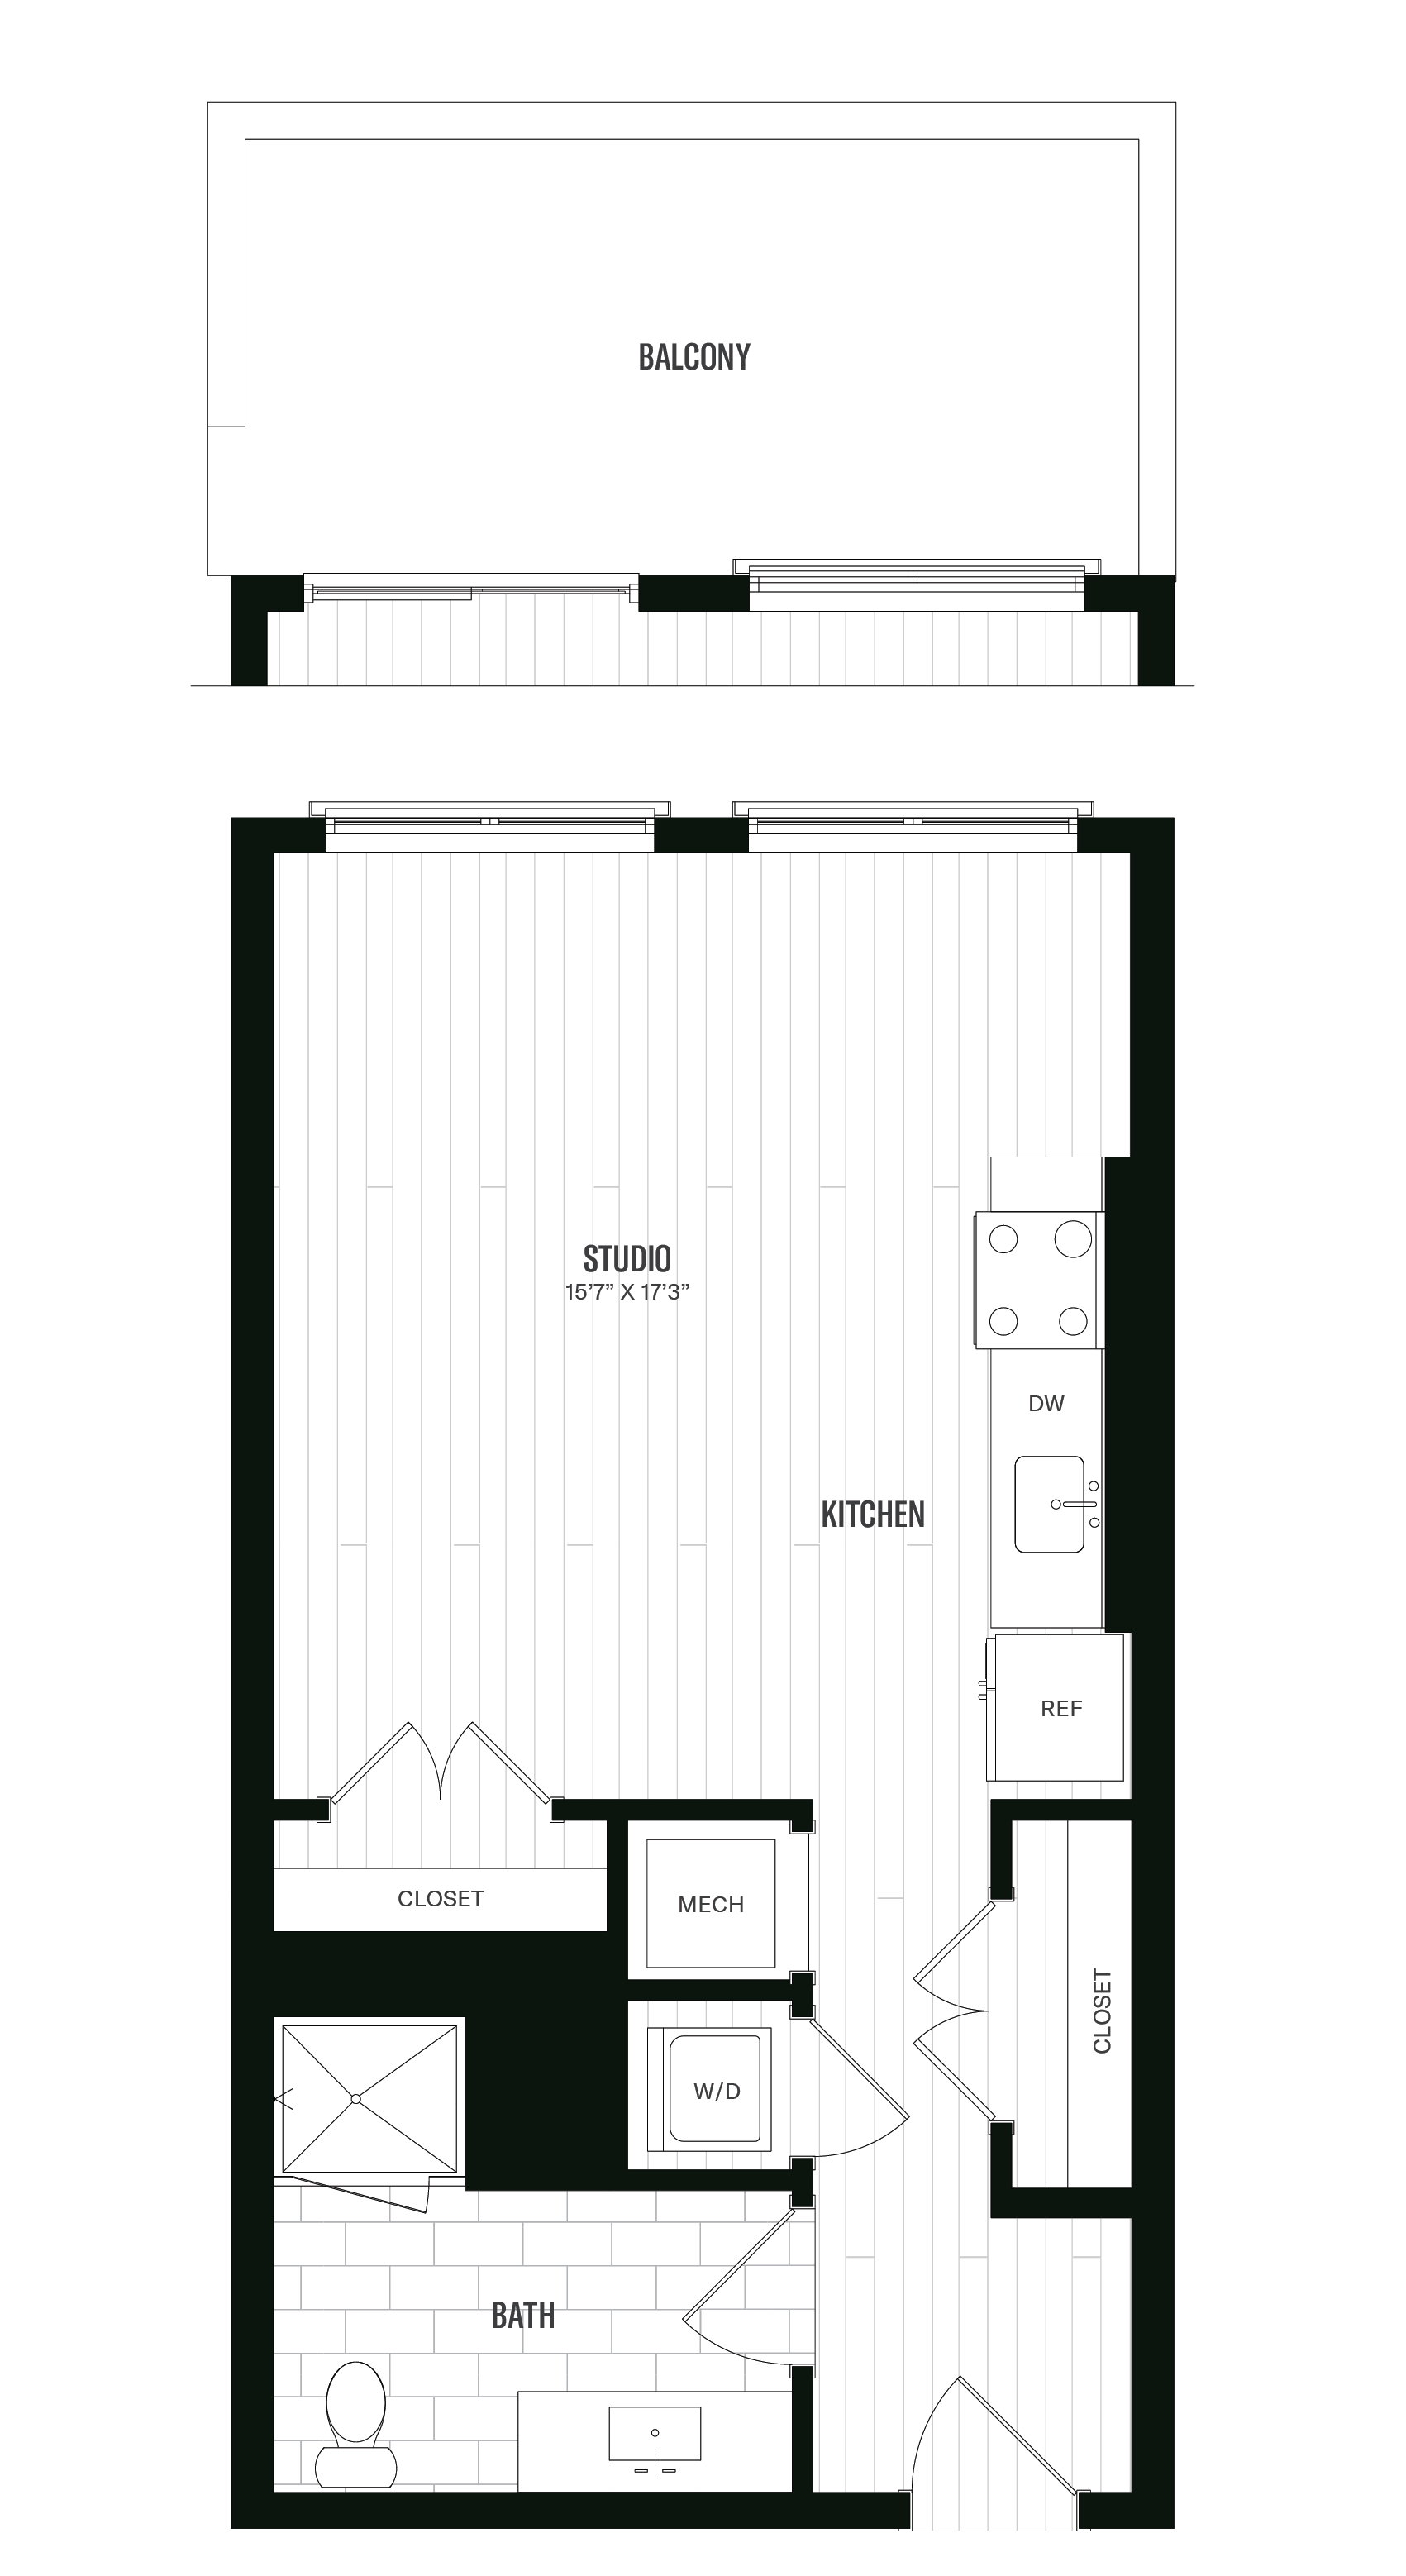 Floorplan image of unit 205